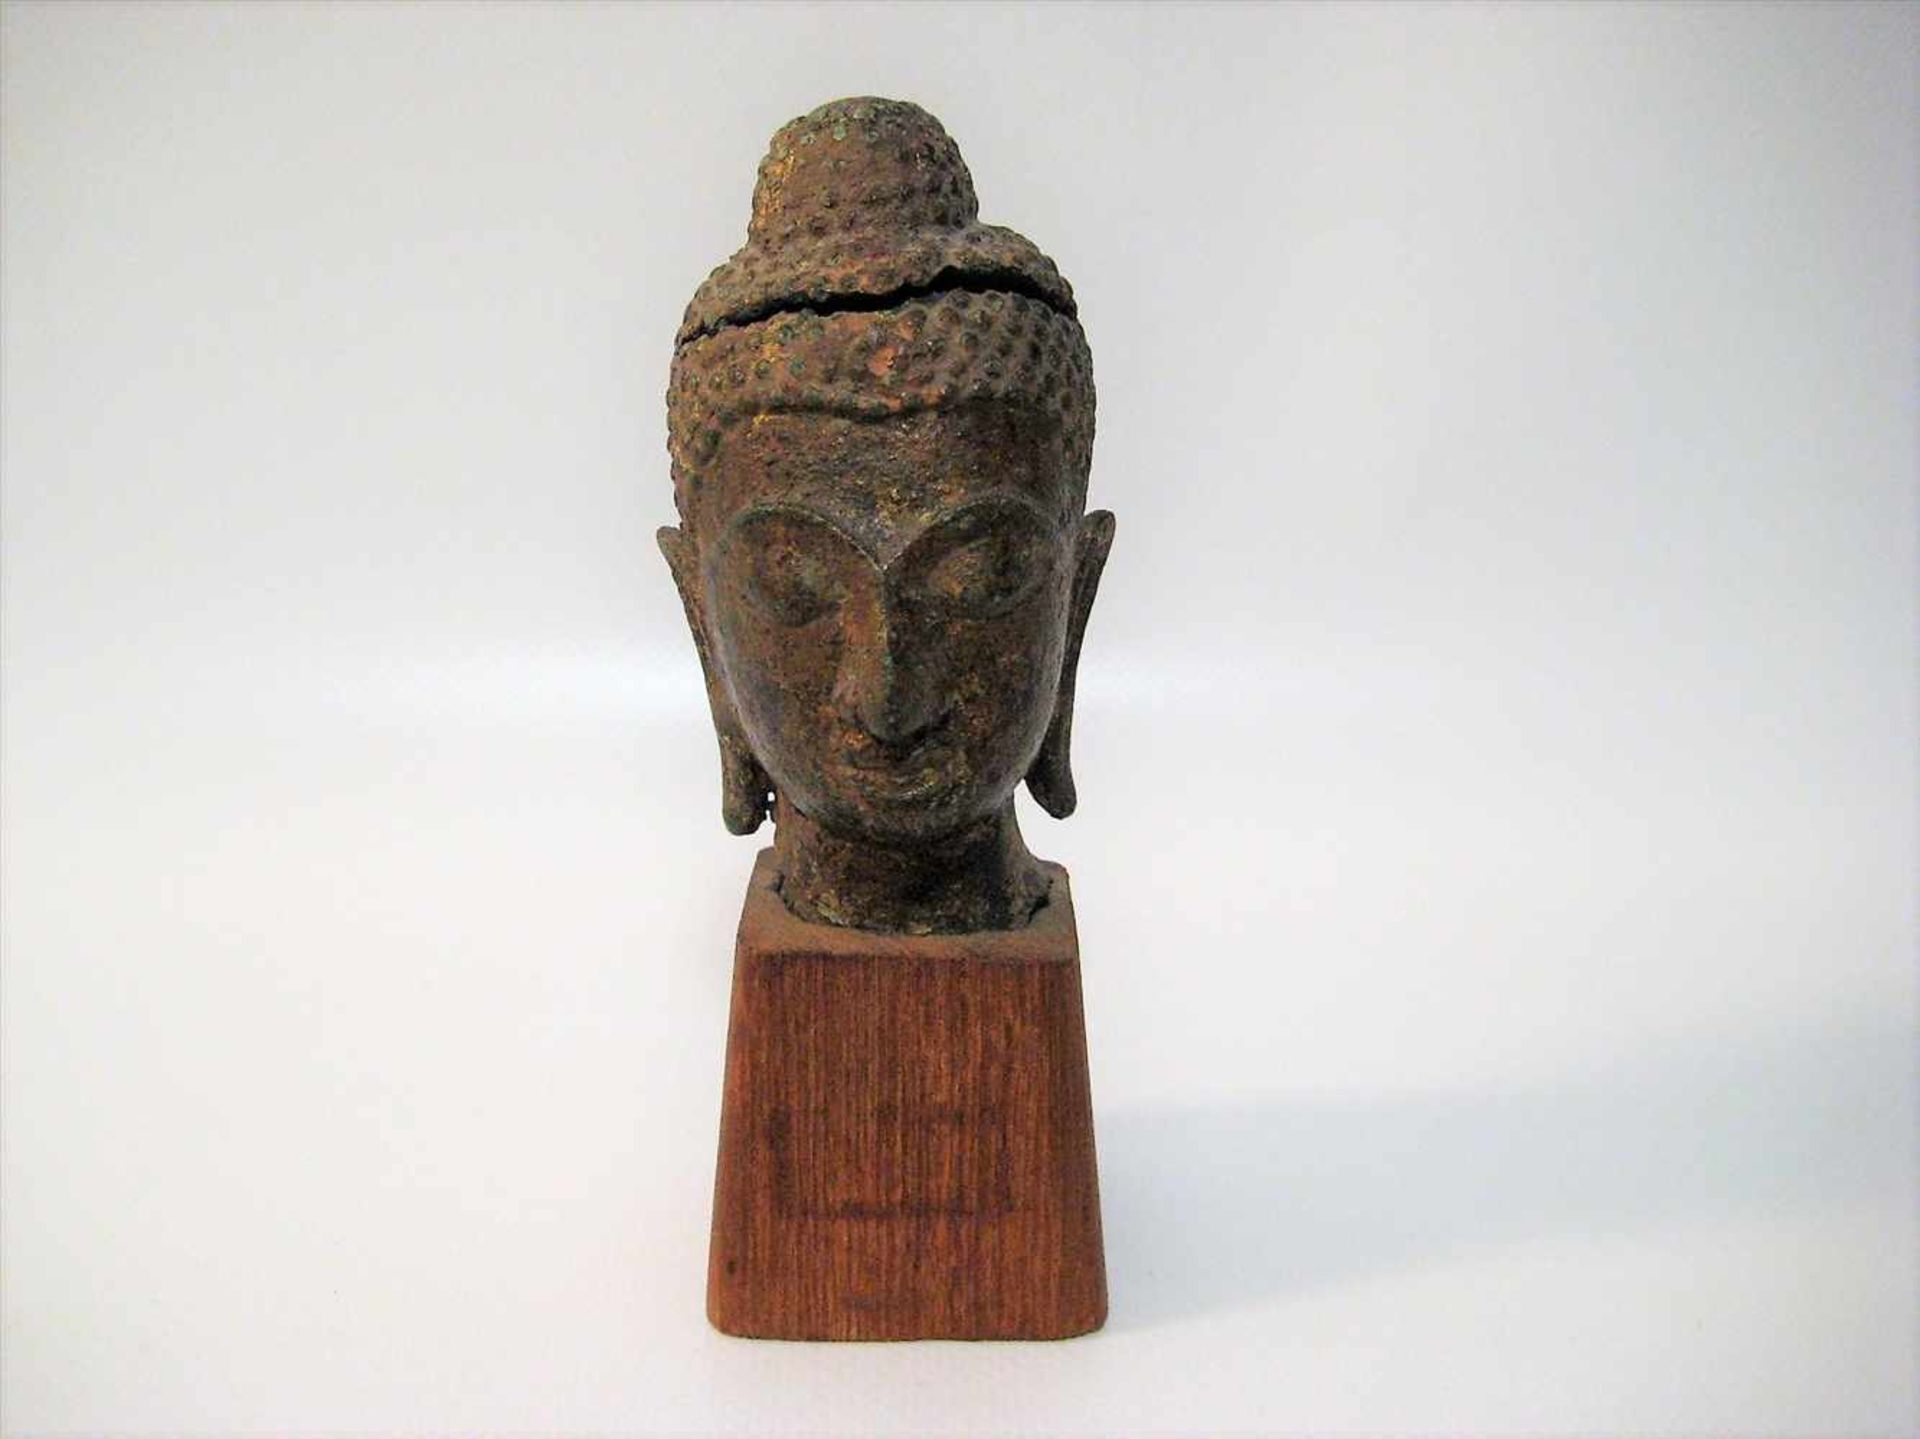 Kopf eines Buddhas, Thailand, Bronze, Kopf besch., Holzsockel, 9 x 5 x 5,5 cm.